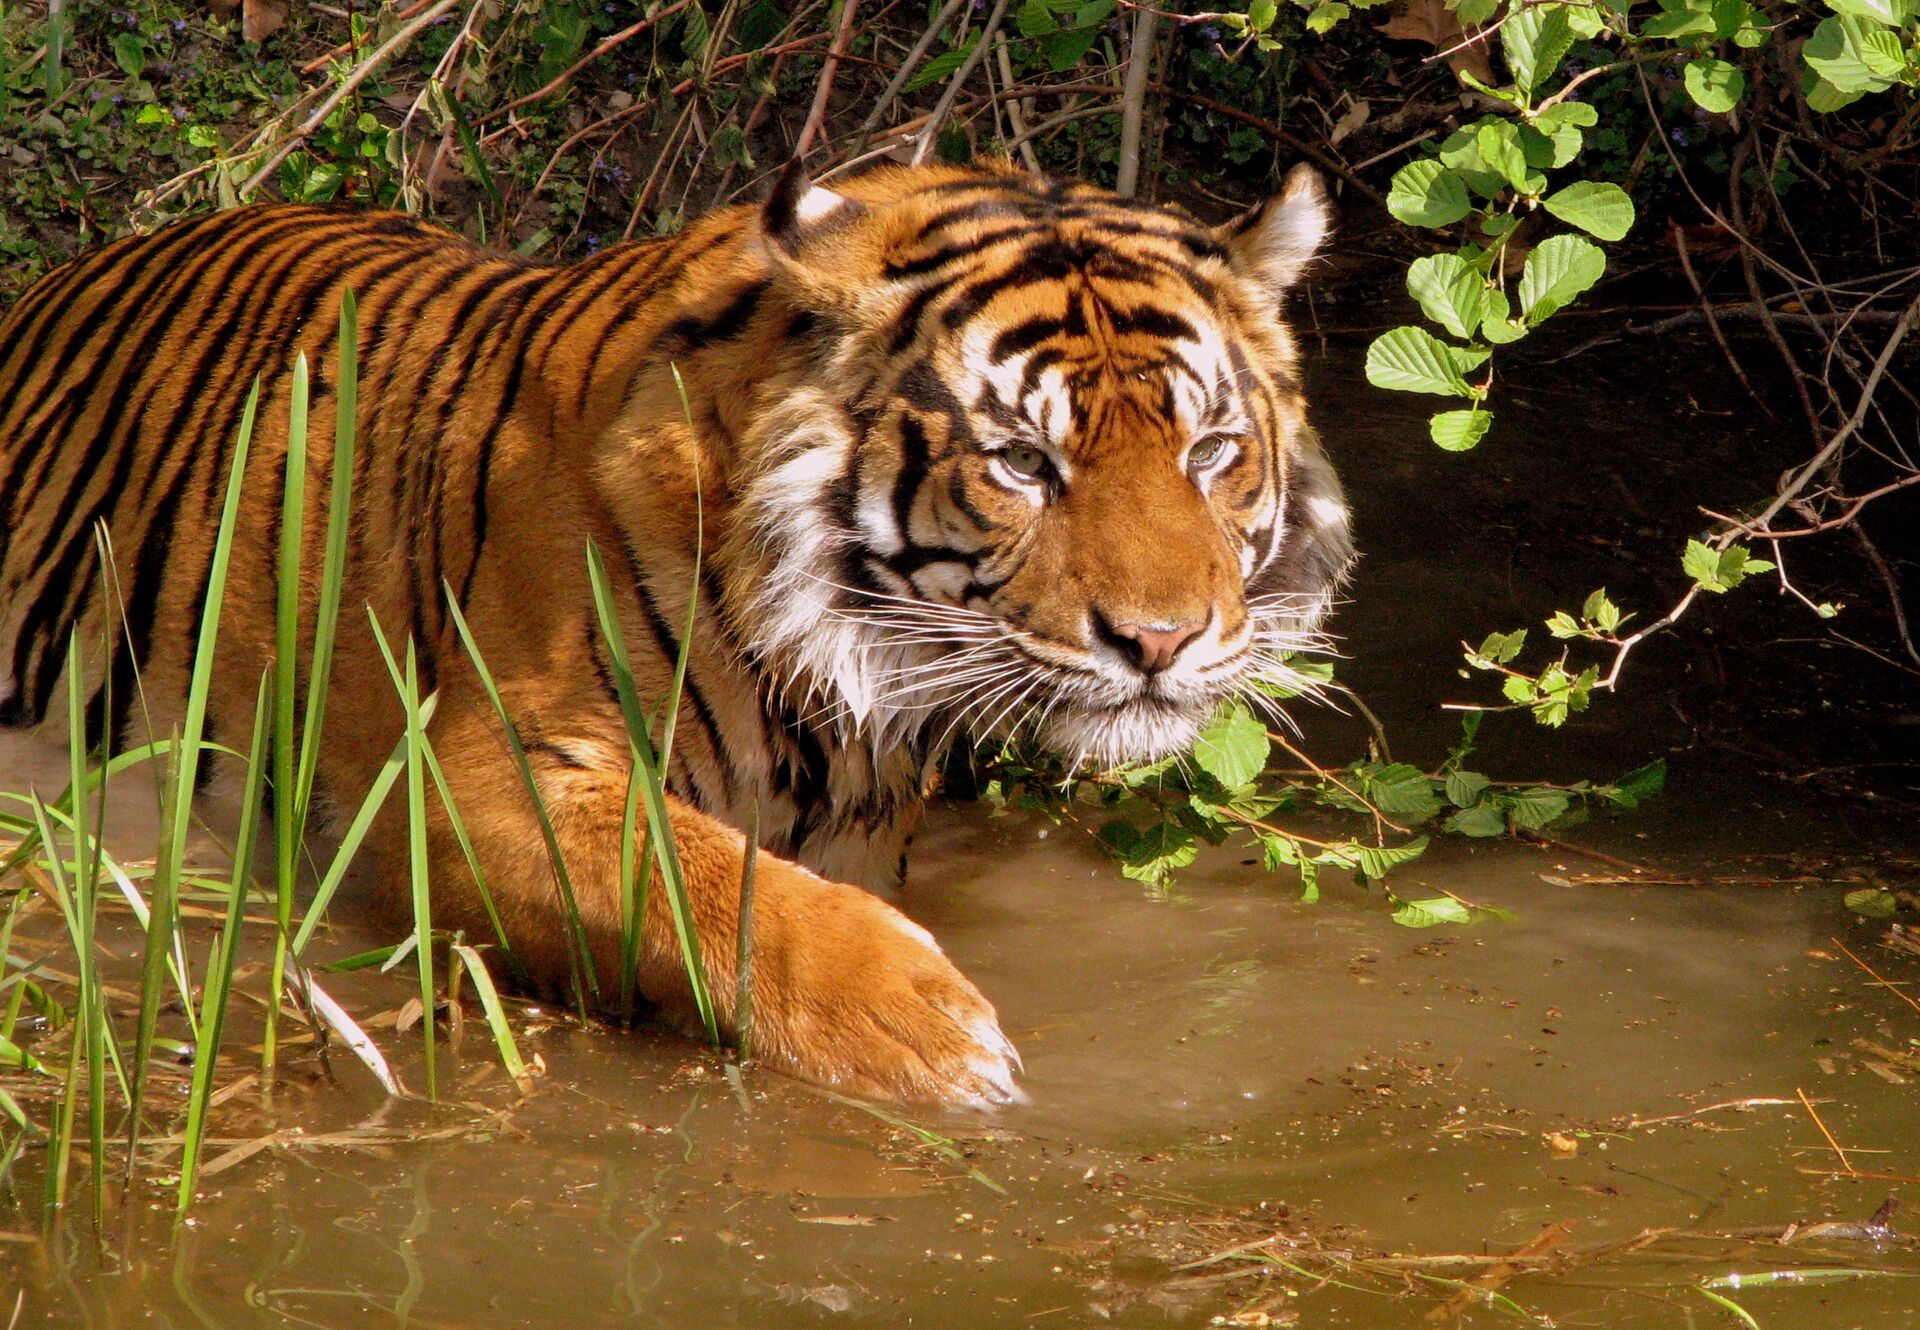 Hổ ở Việt Nam có thể đã tuyệt chủng, làm sao để cùng khôi phục loài hổ ở Đông Nam Á? - Sputnik Việt Nam, 1920, 30.07.2021